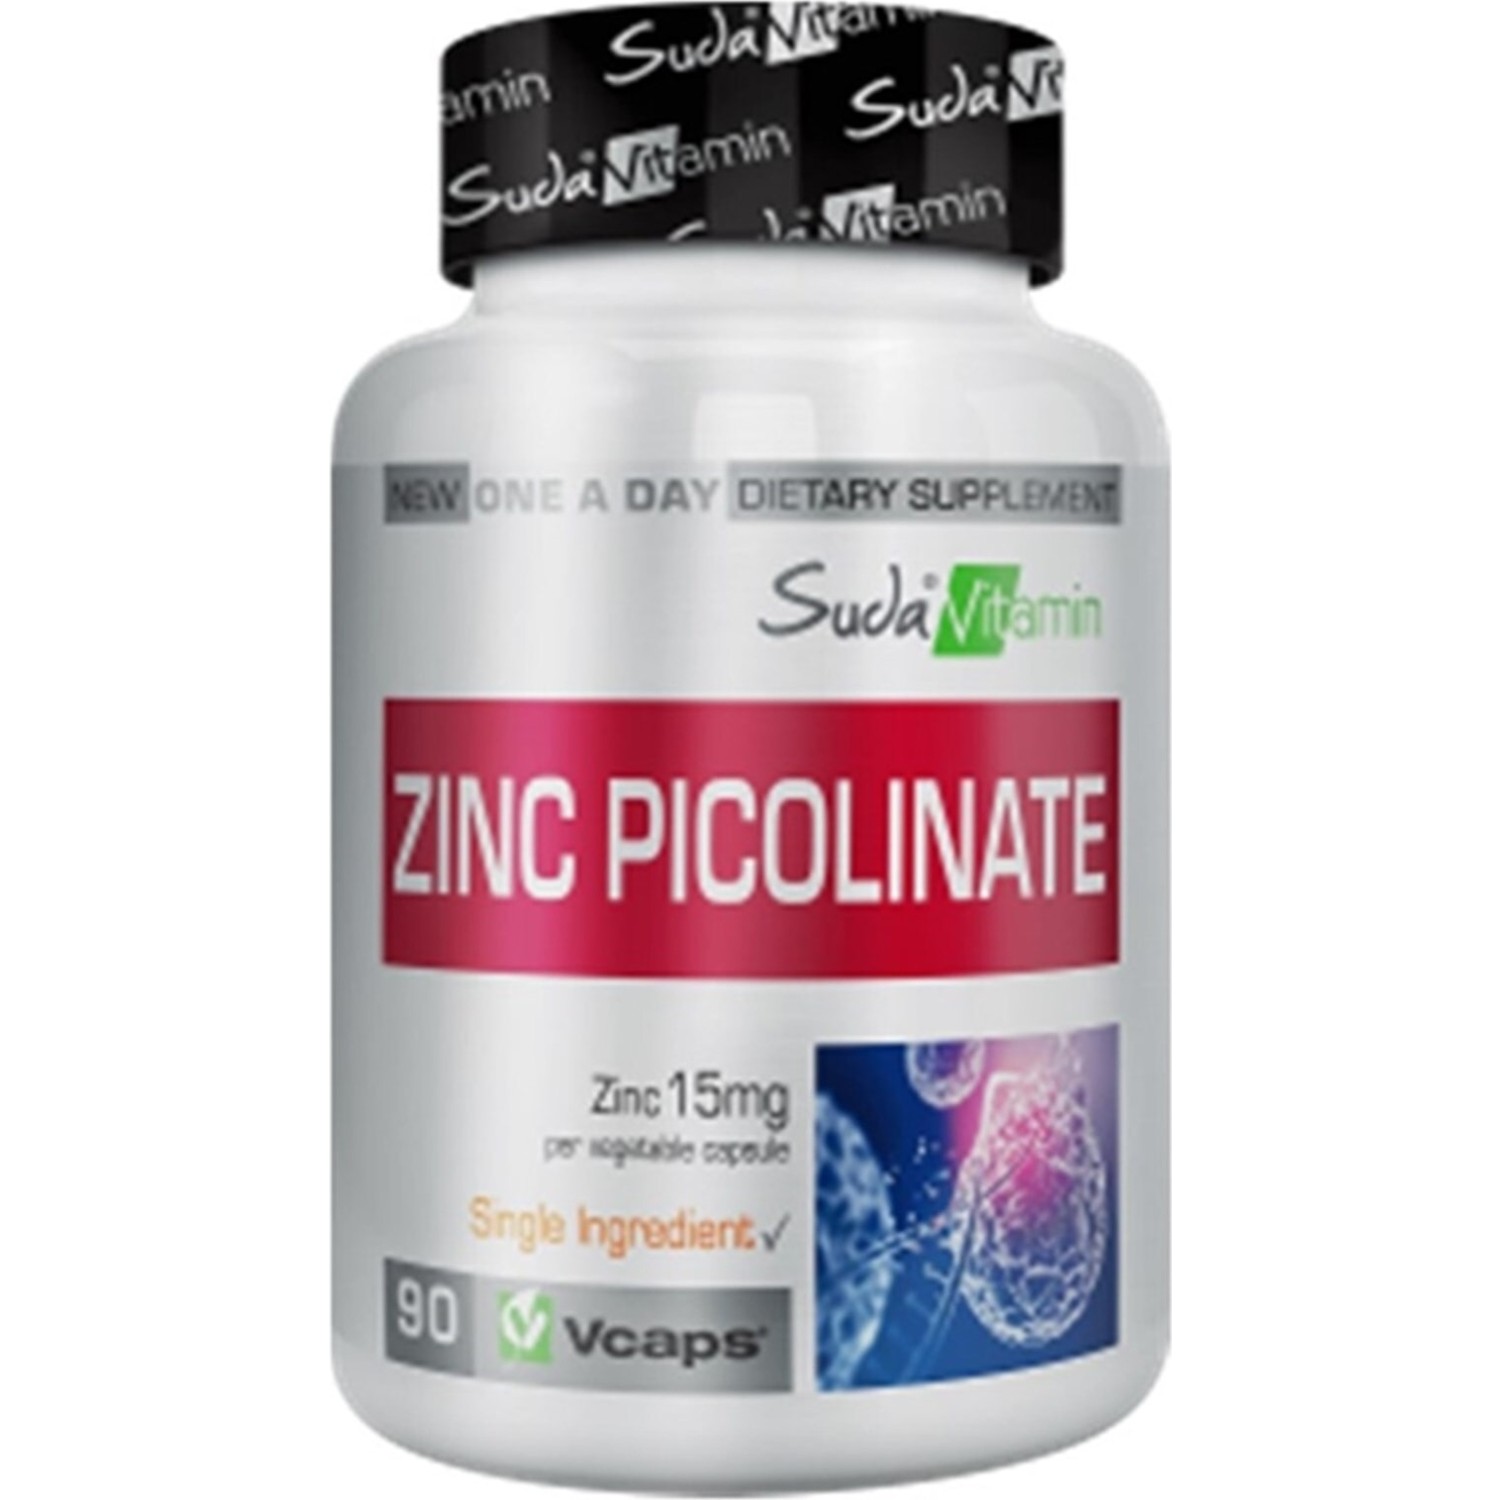 Пищевая добавка Suda Vitamin Цинк 90 капсул биологически активная добавка к пище zinc picolinate 15 мг 180 капсул